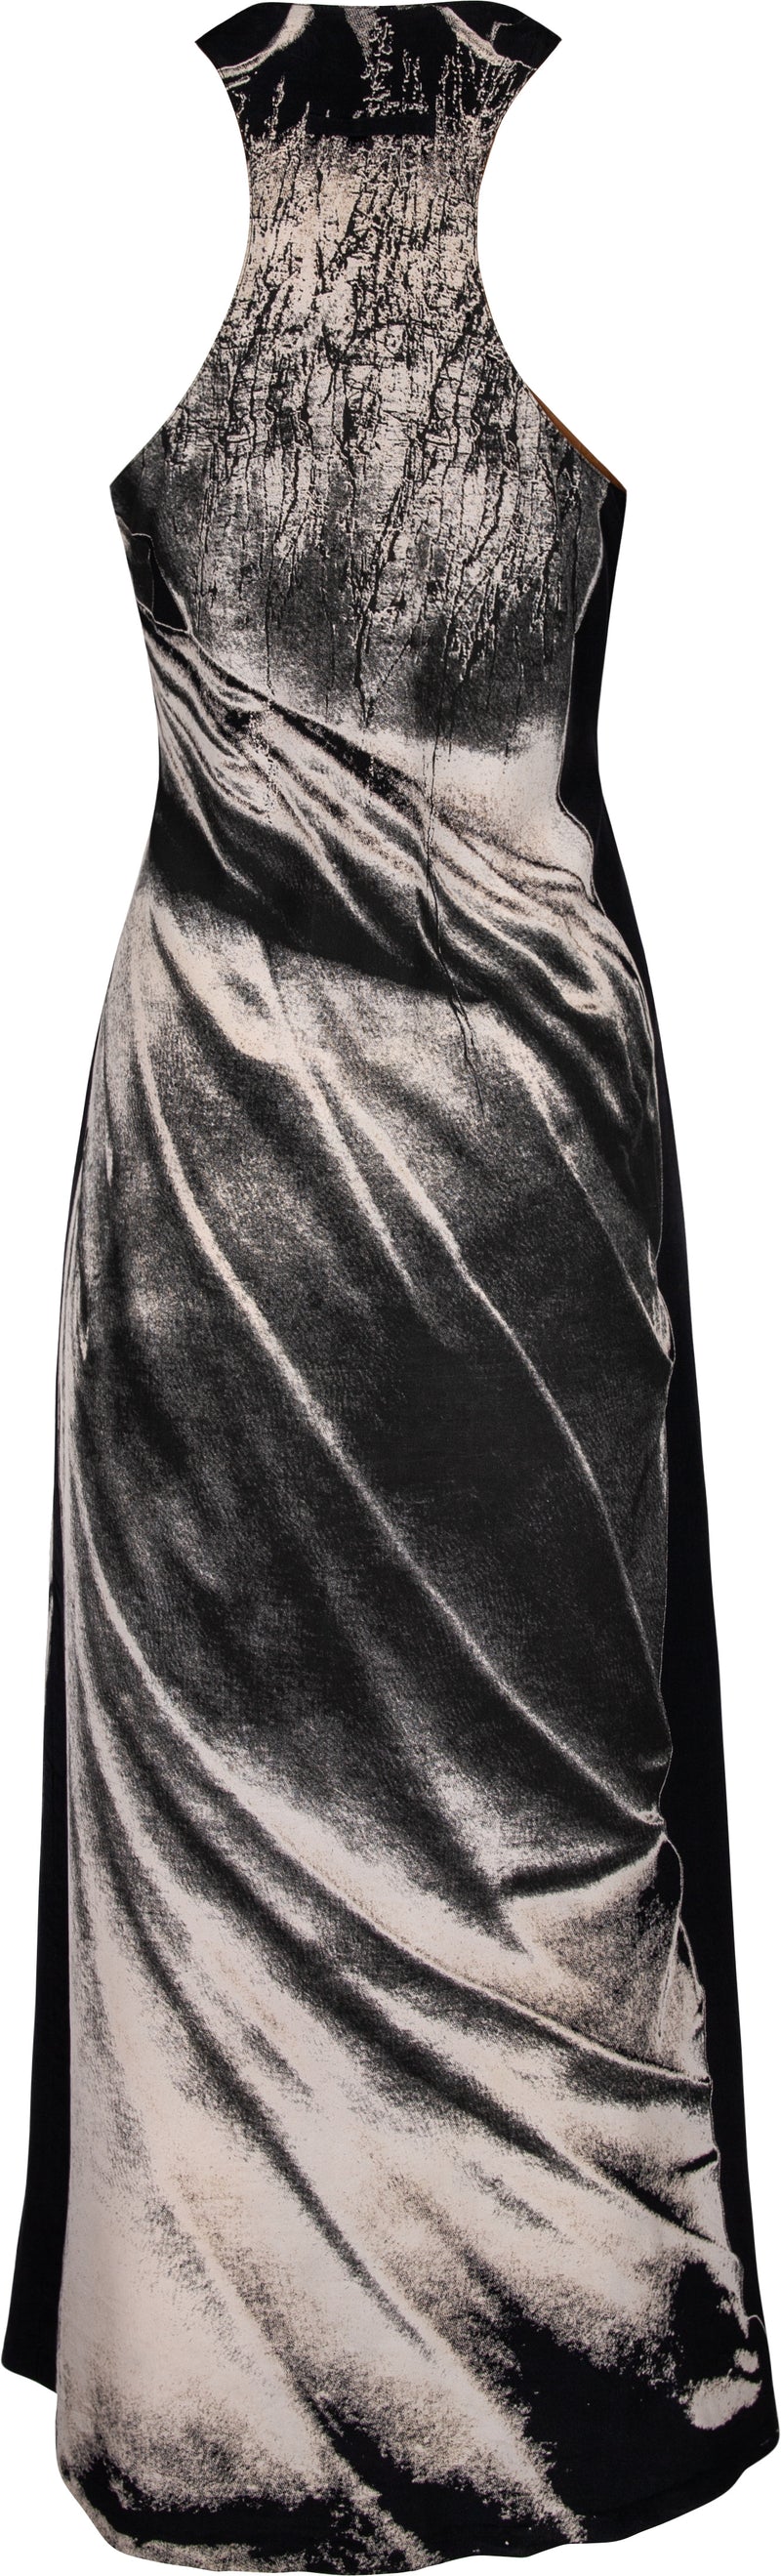 Jean Paul Gaultier Spring 1999 Runway Museum Hellenic Statue Gown